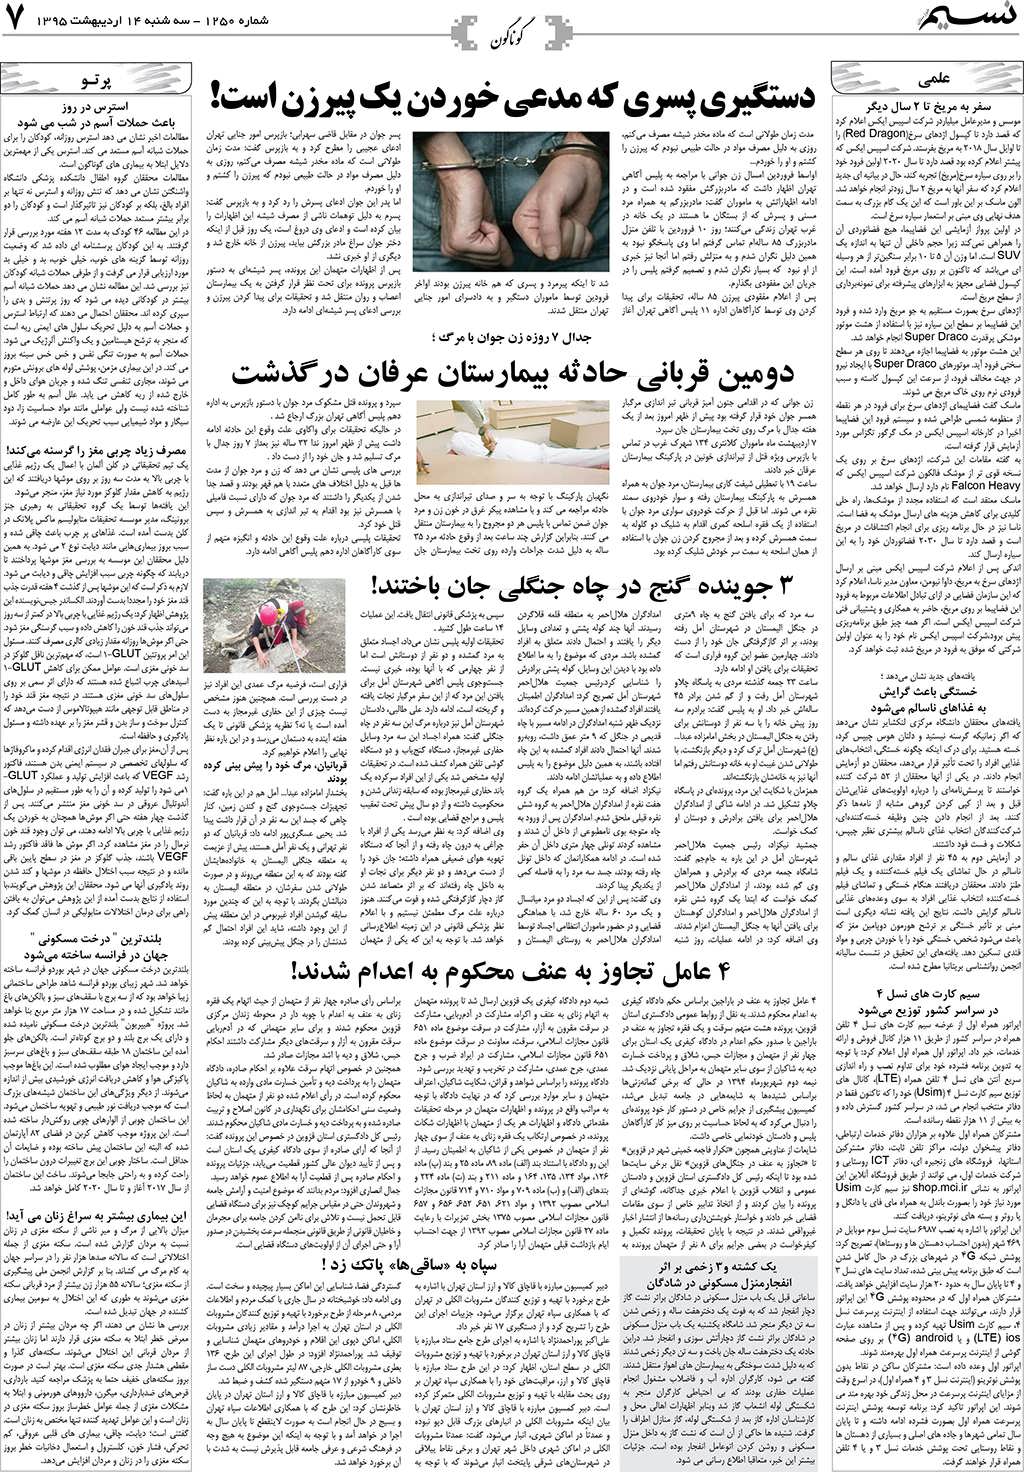 صفحه گوناگون روزنامه نسیم شماره 1250